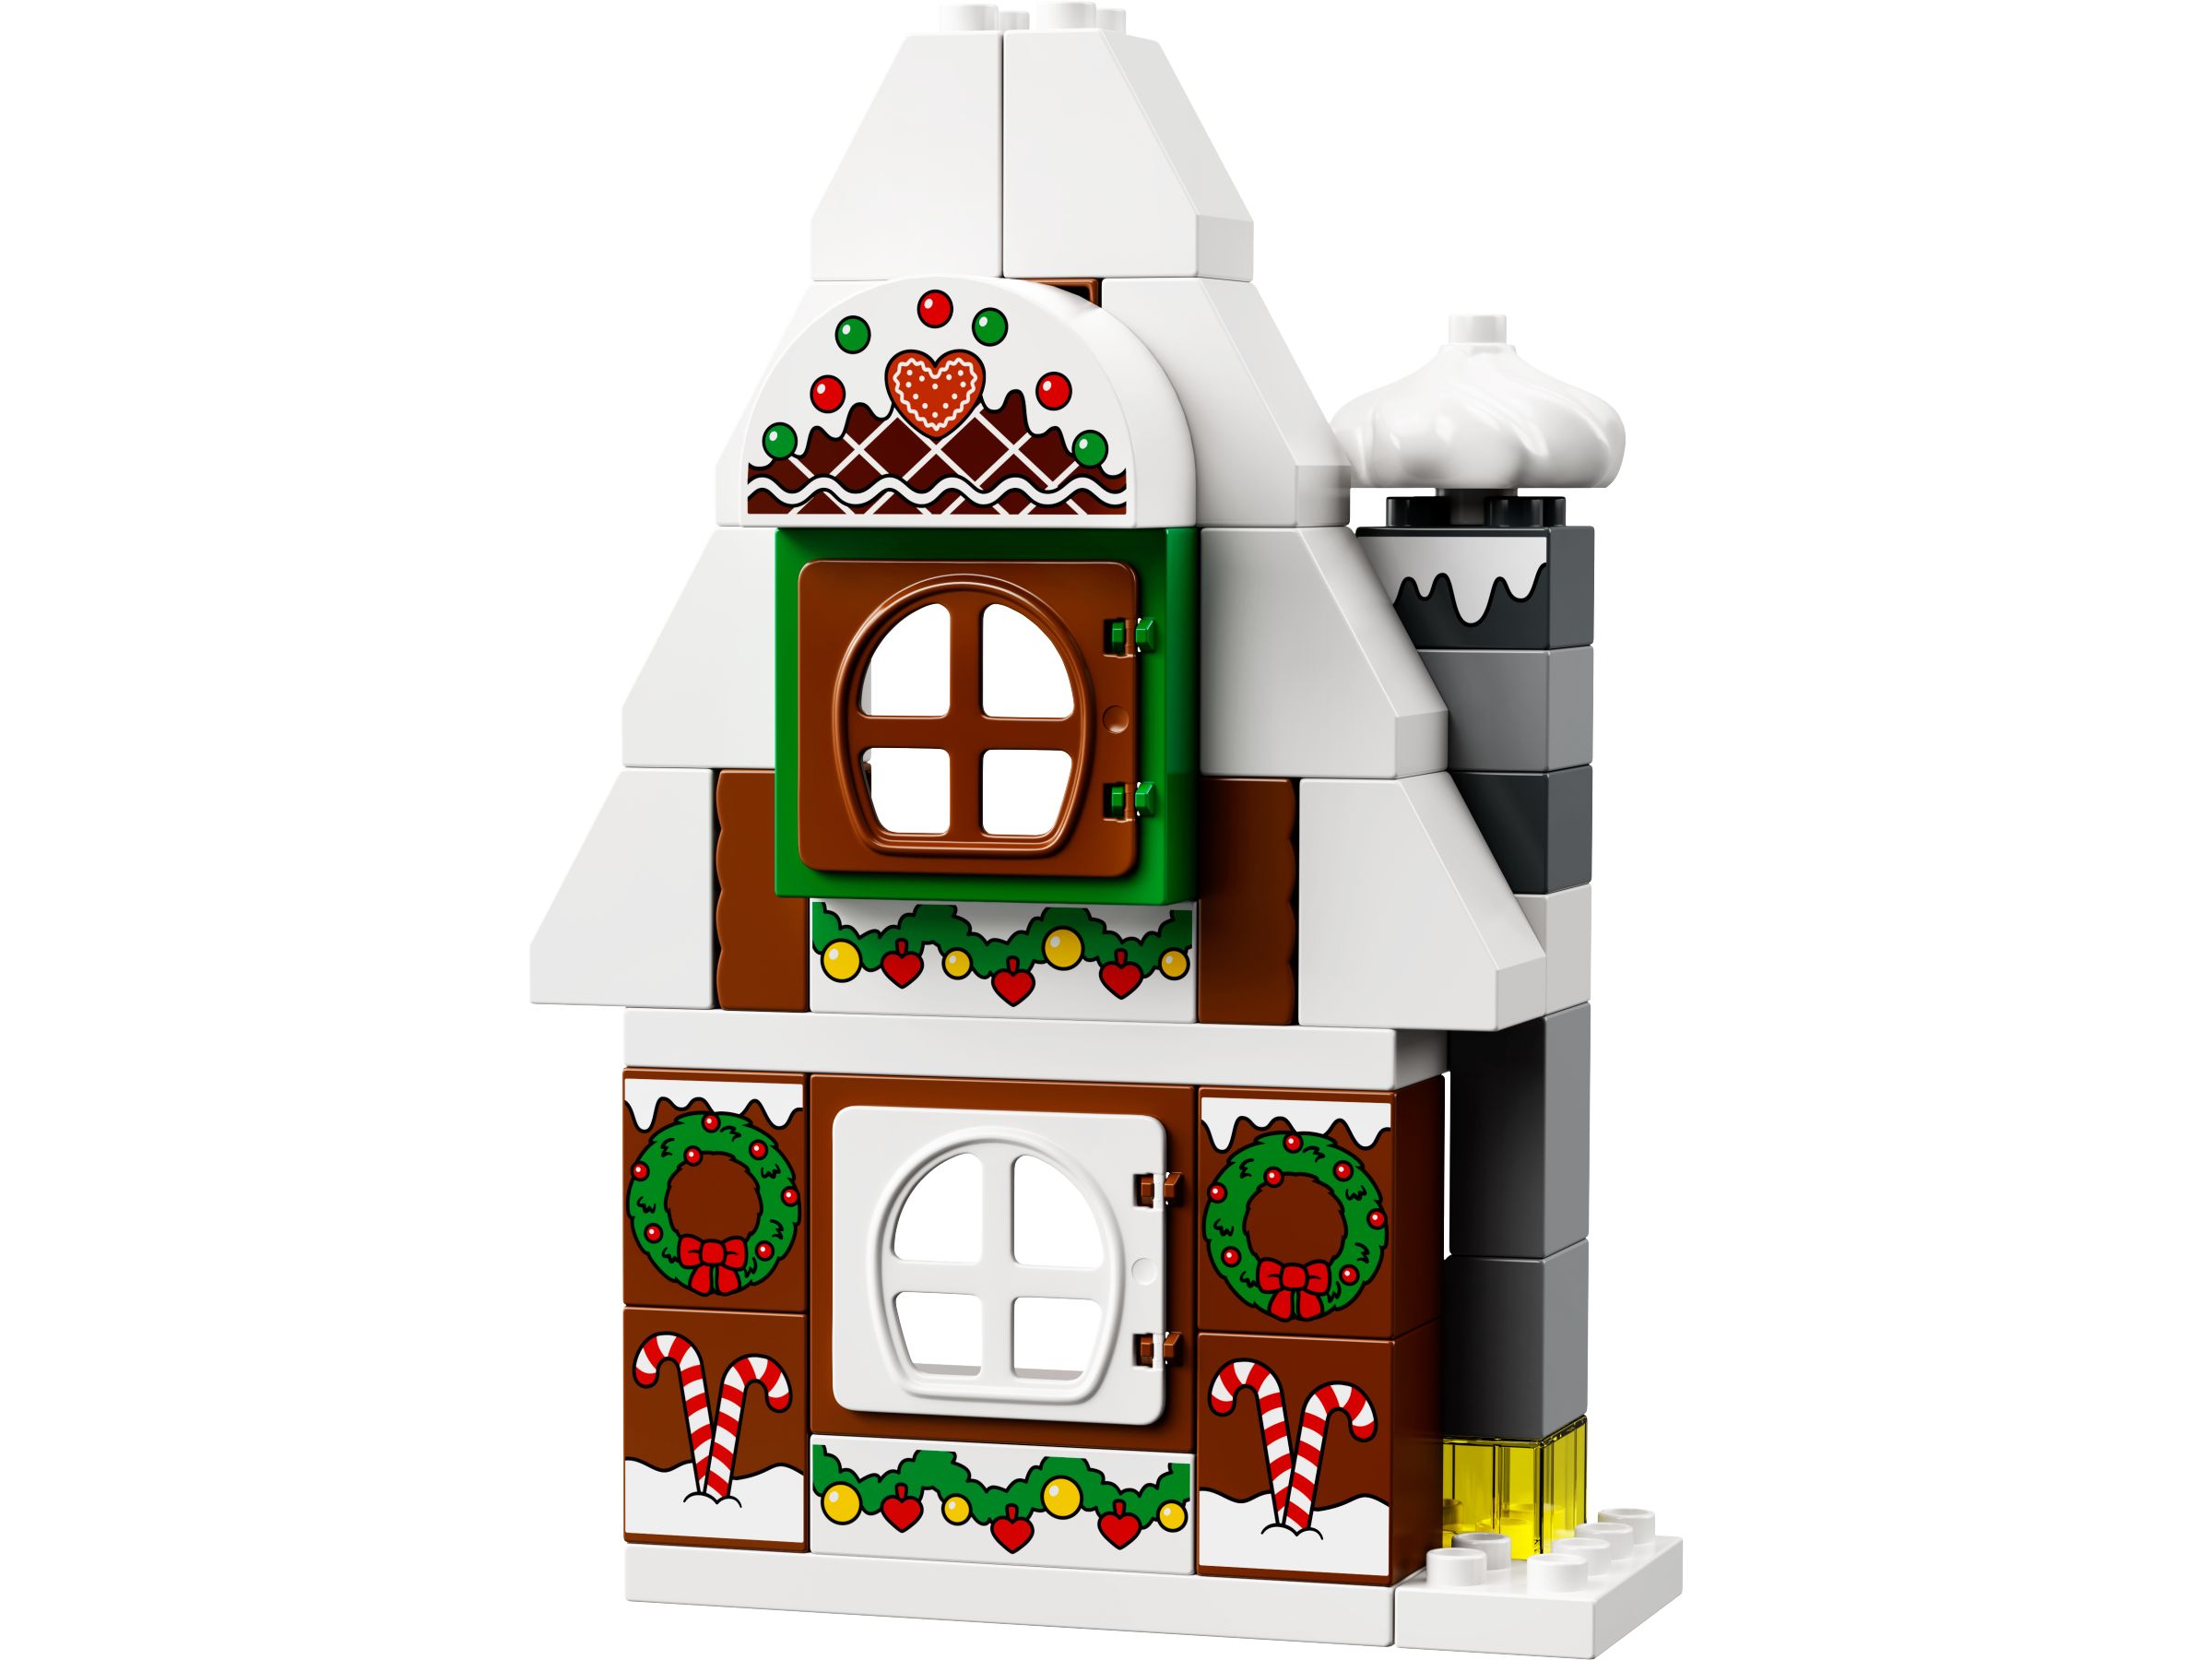 LEGO Duplo 10976 Lebkuchenhaus mit Weihnachtsmann LEGO_10976_alt2.jpg